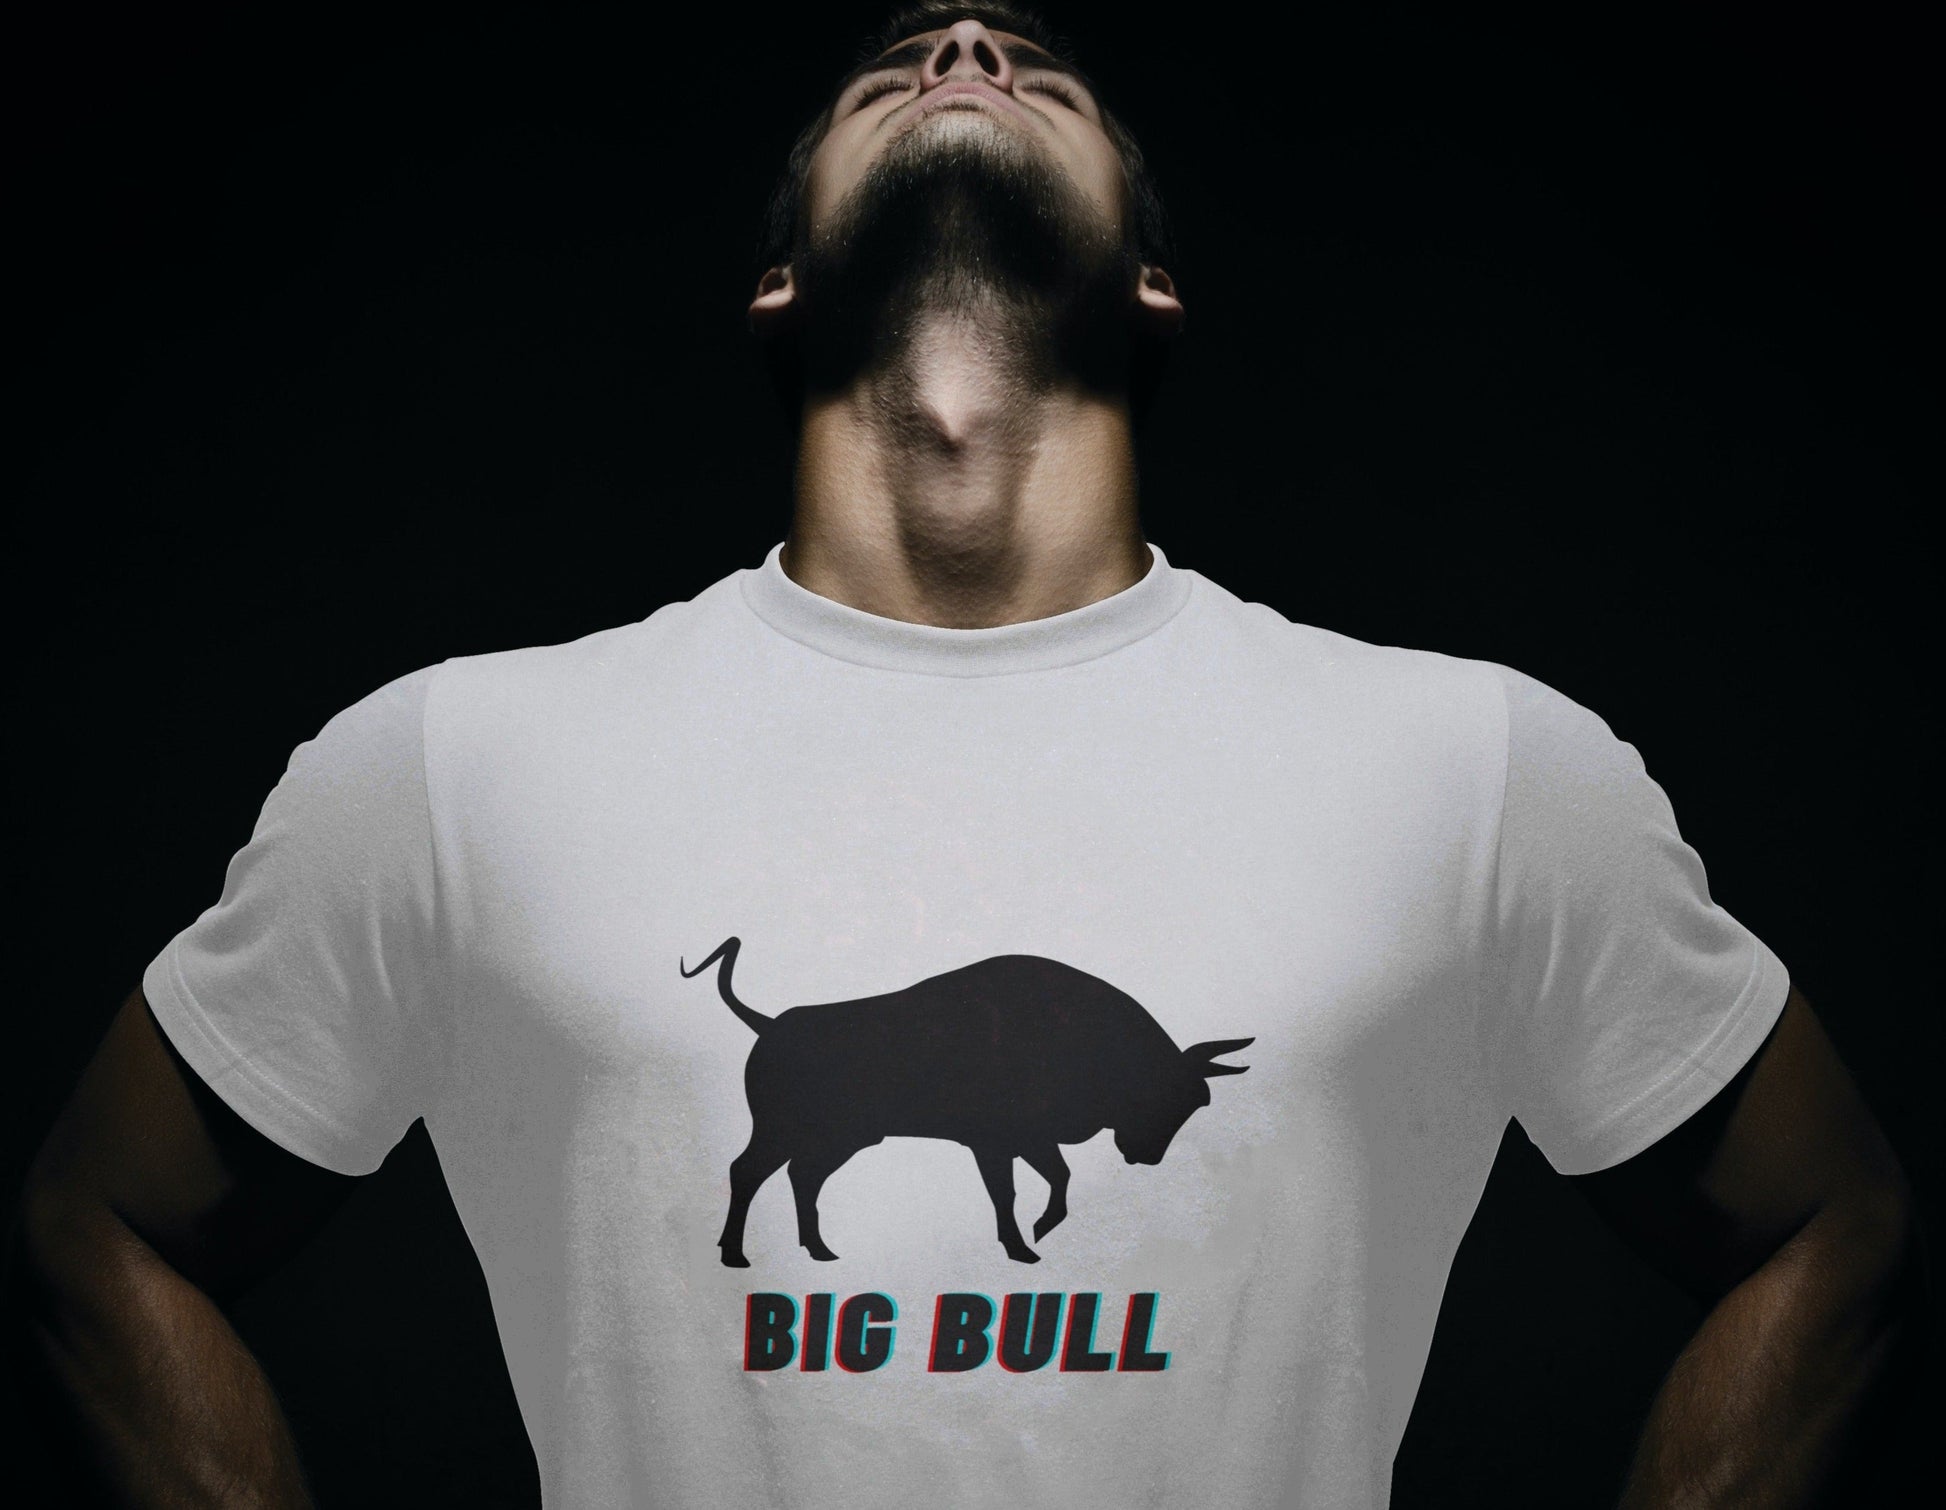 BigBull (T-shirt) - tickermart.com